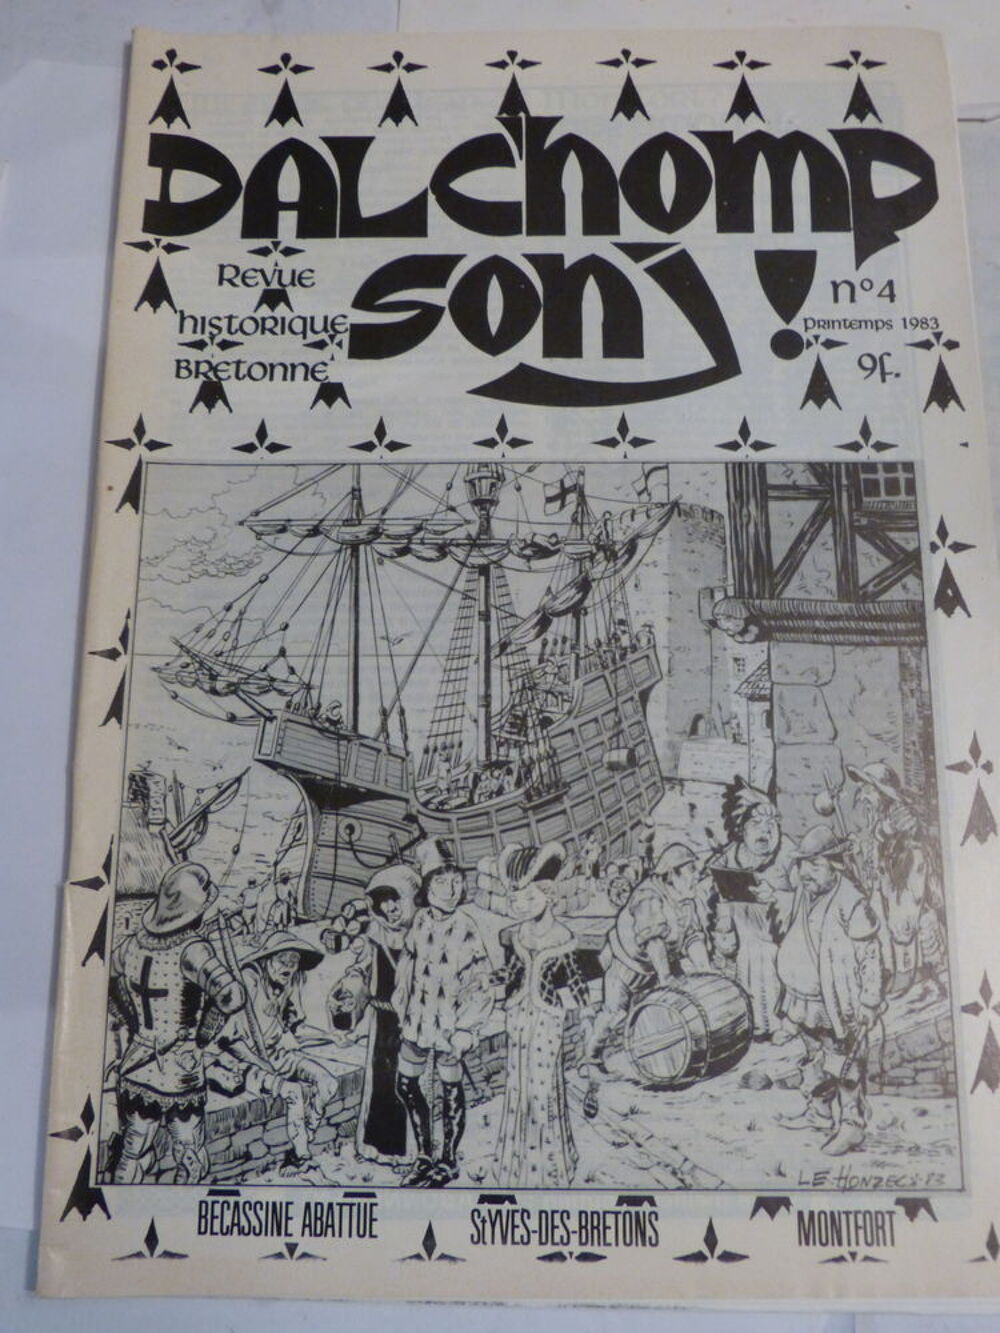 DALCHOMP SONJ N&deg; 4 revue historique BRETONNE Livres et BD